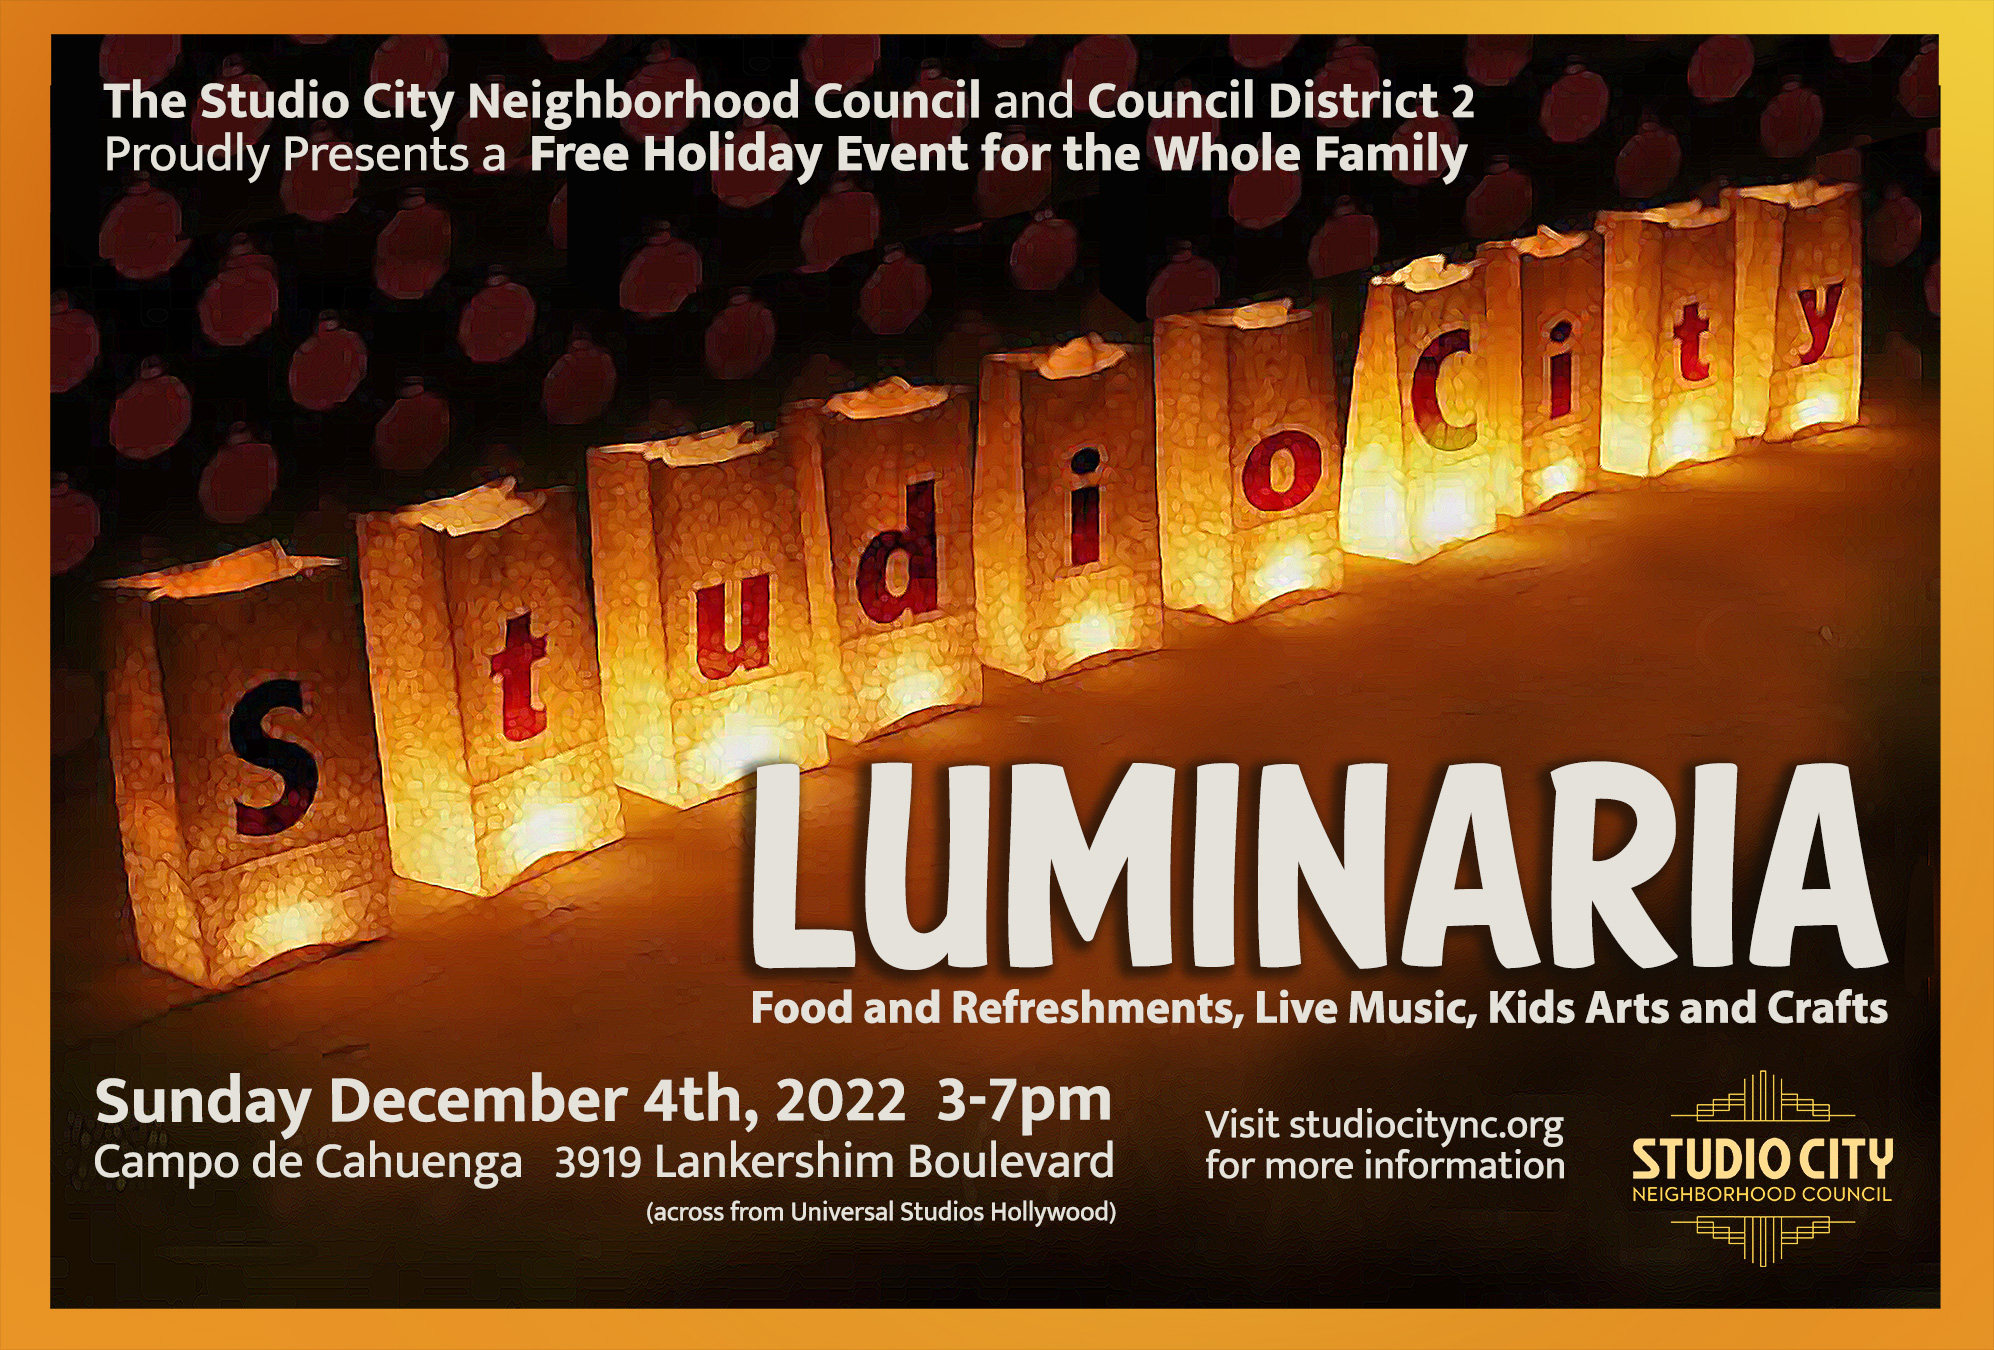 The 10th Annual Luminaria Festival  coming Sunday Dec. 4th